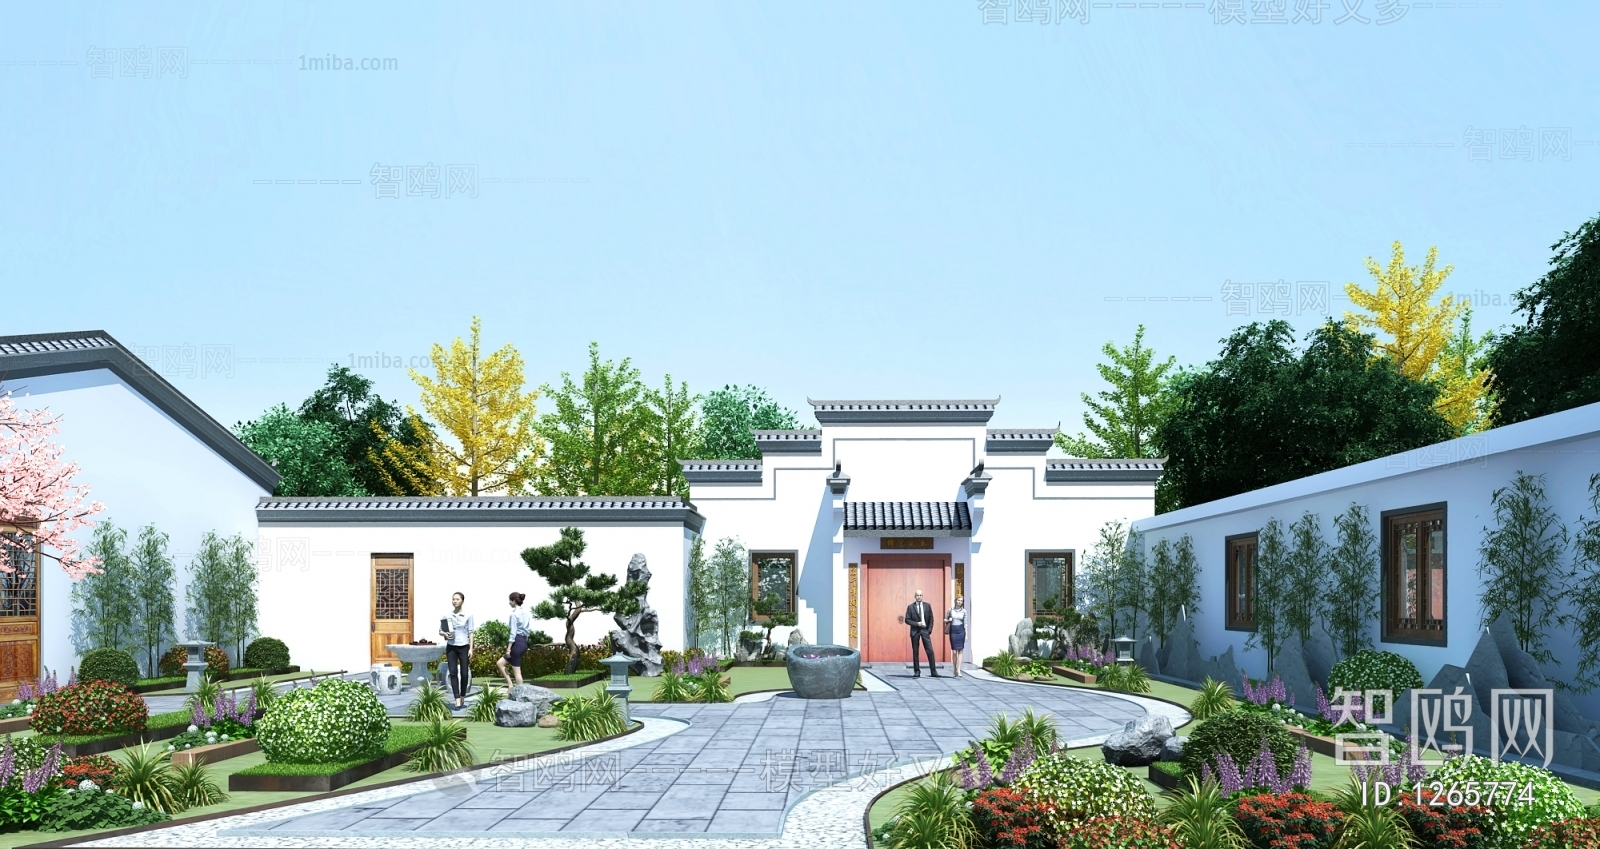 中式古建徽派建筑园林景观庭院3d模型下载